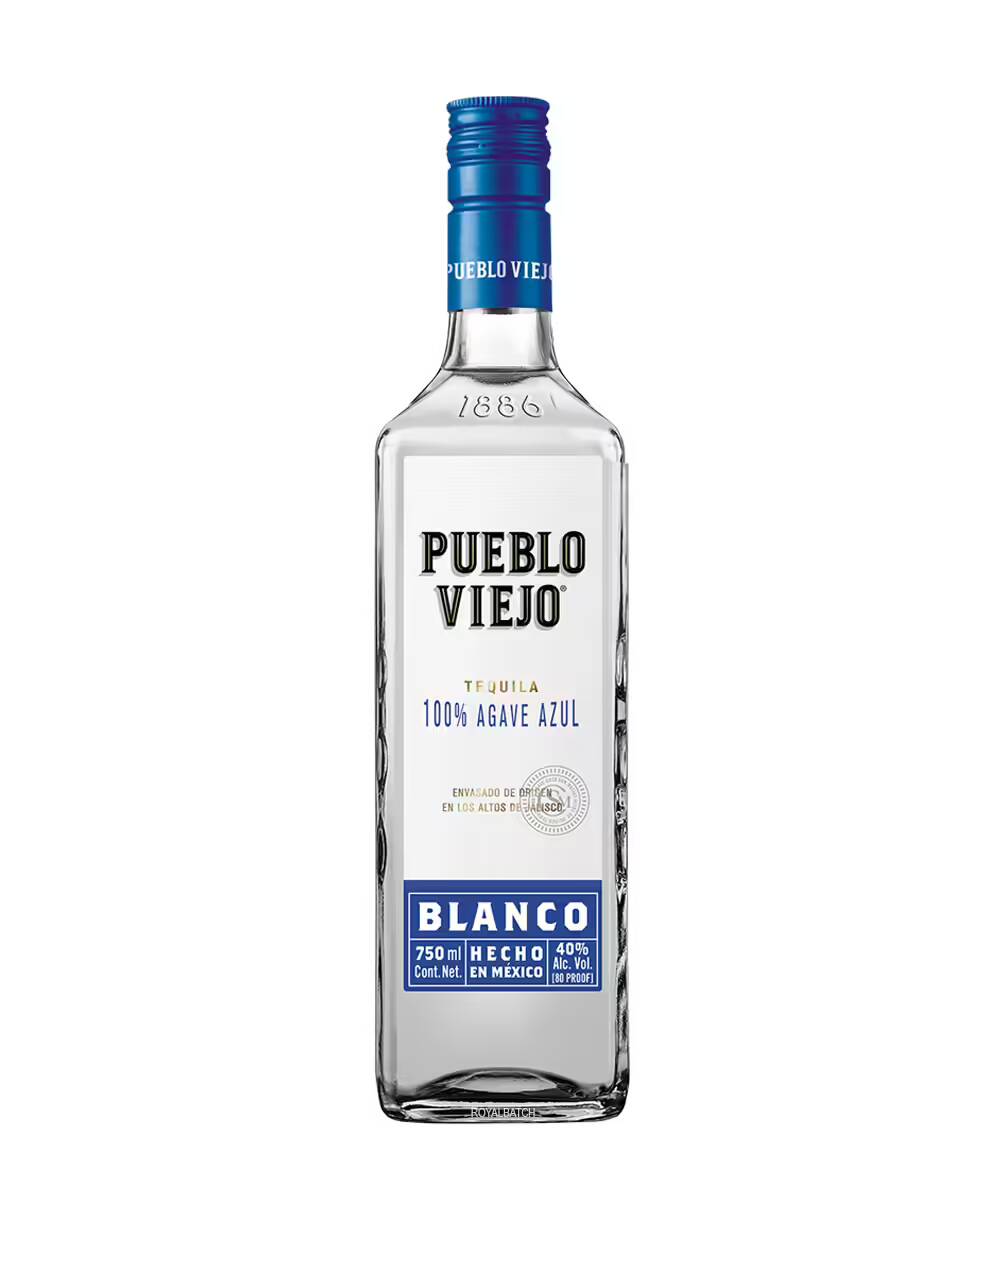 Pueblo Viejo Blanco Tequila